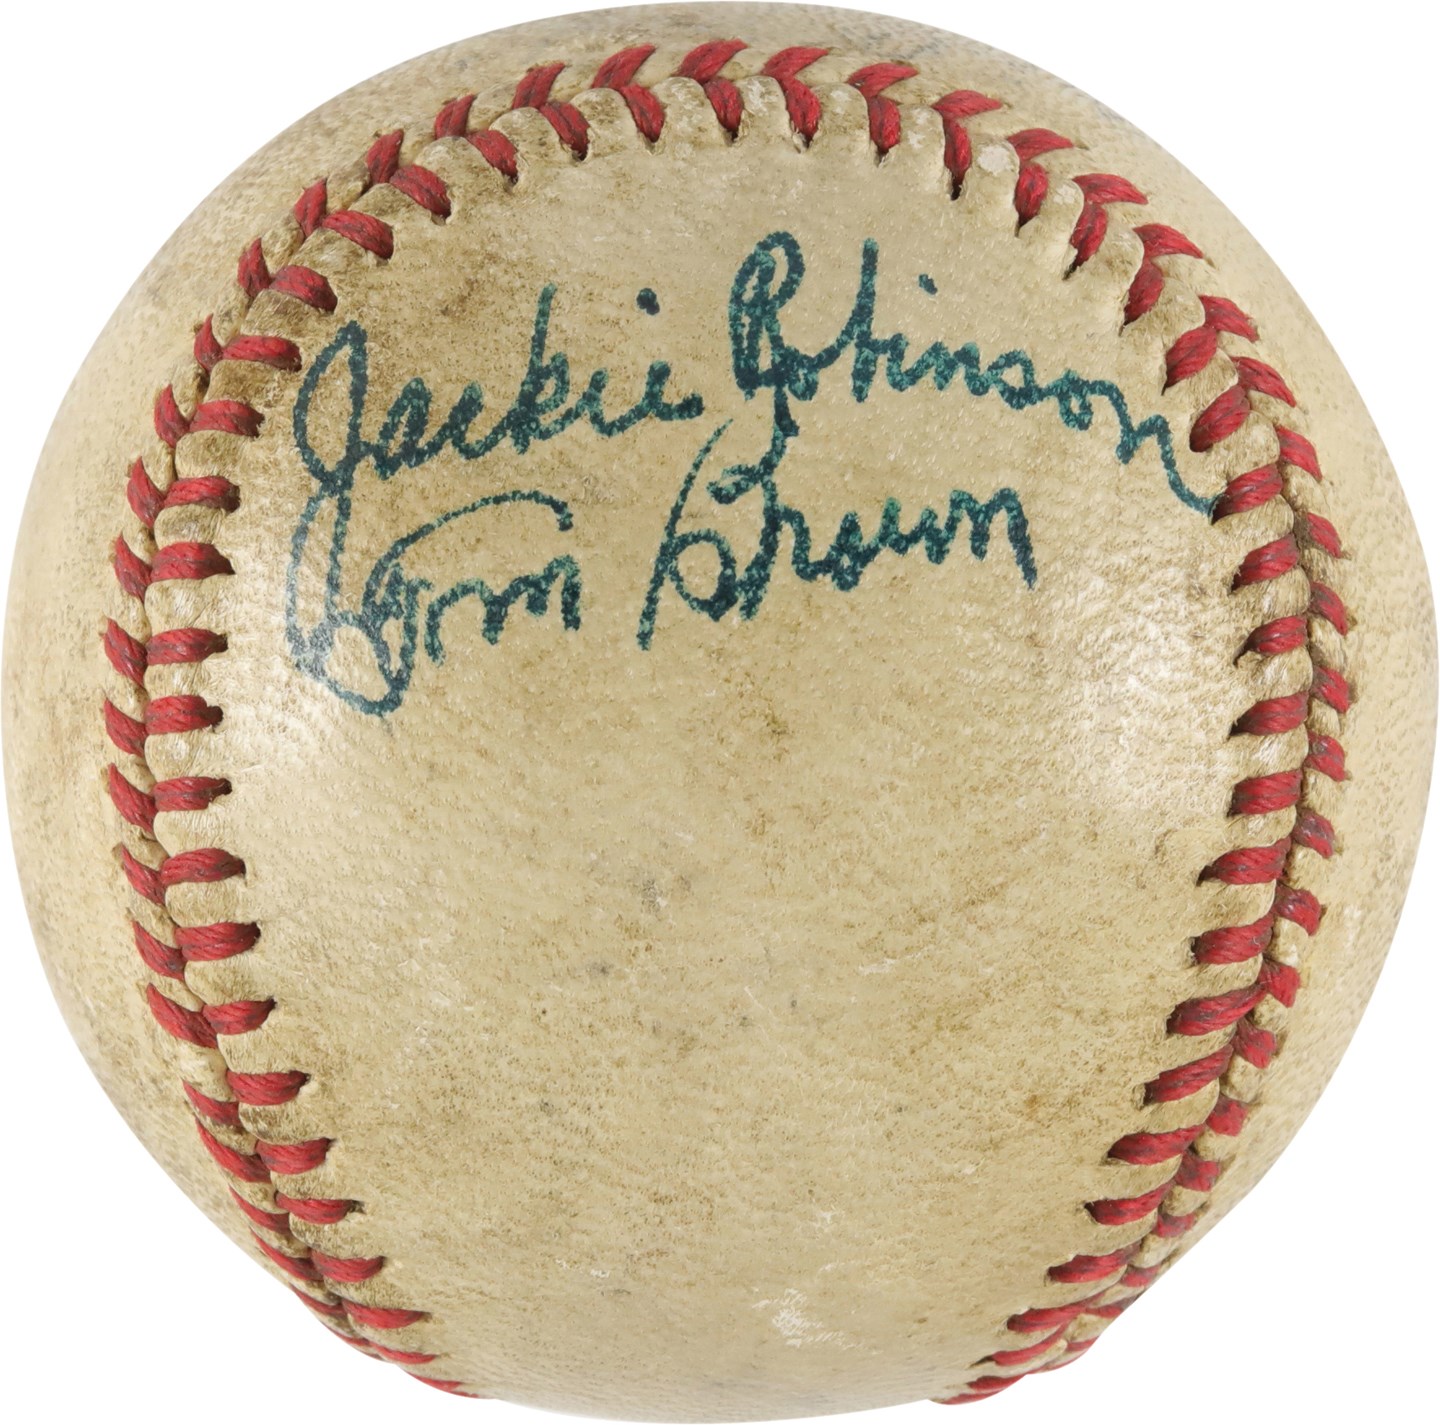 - Jackie Robinson Signed Baseball (PSA)